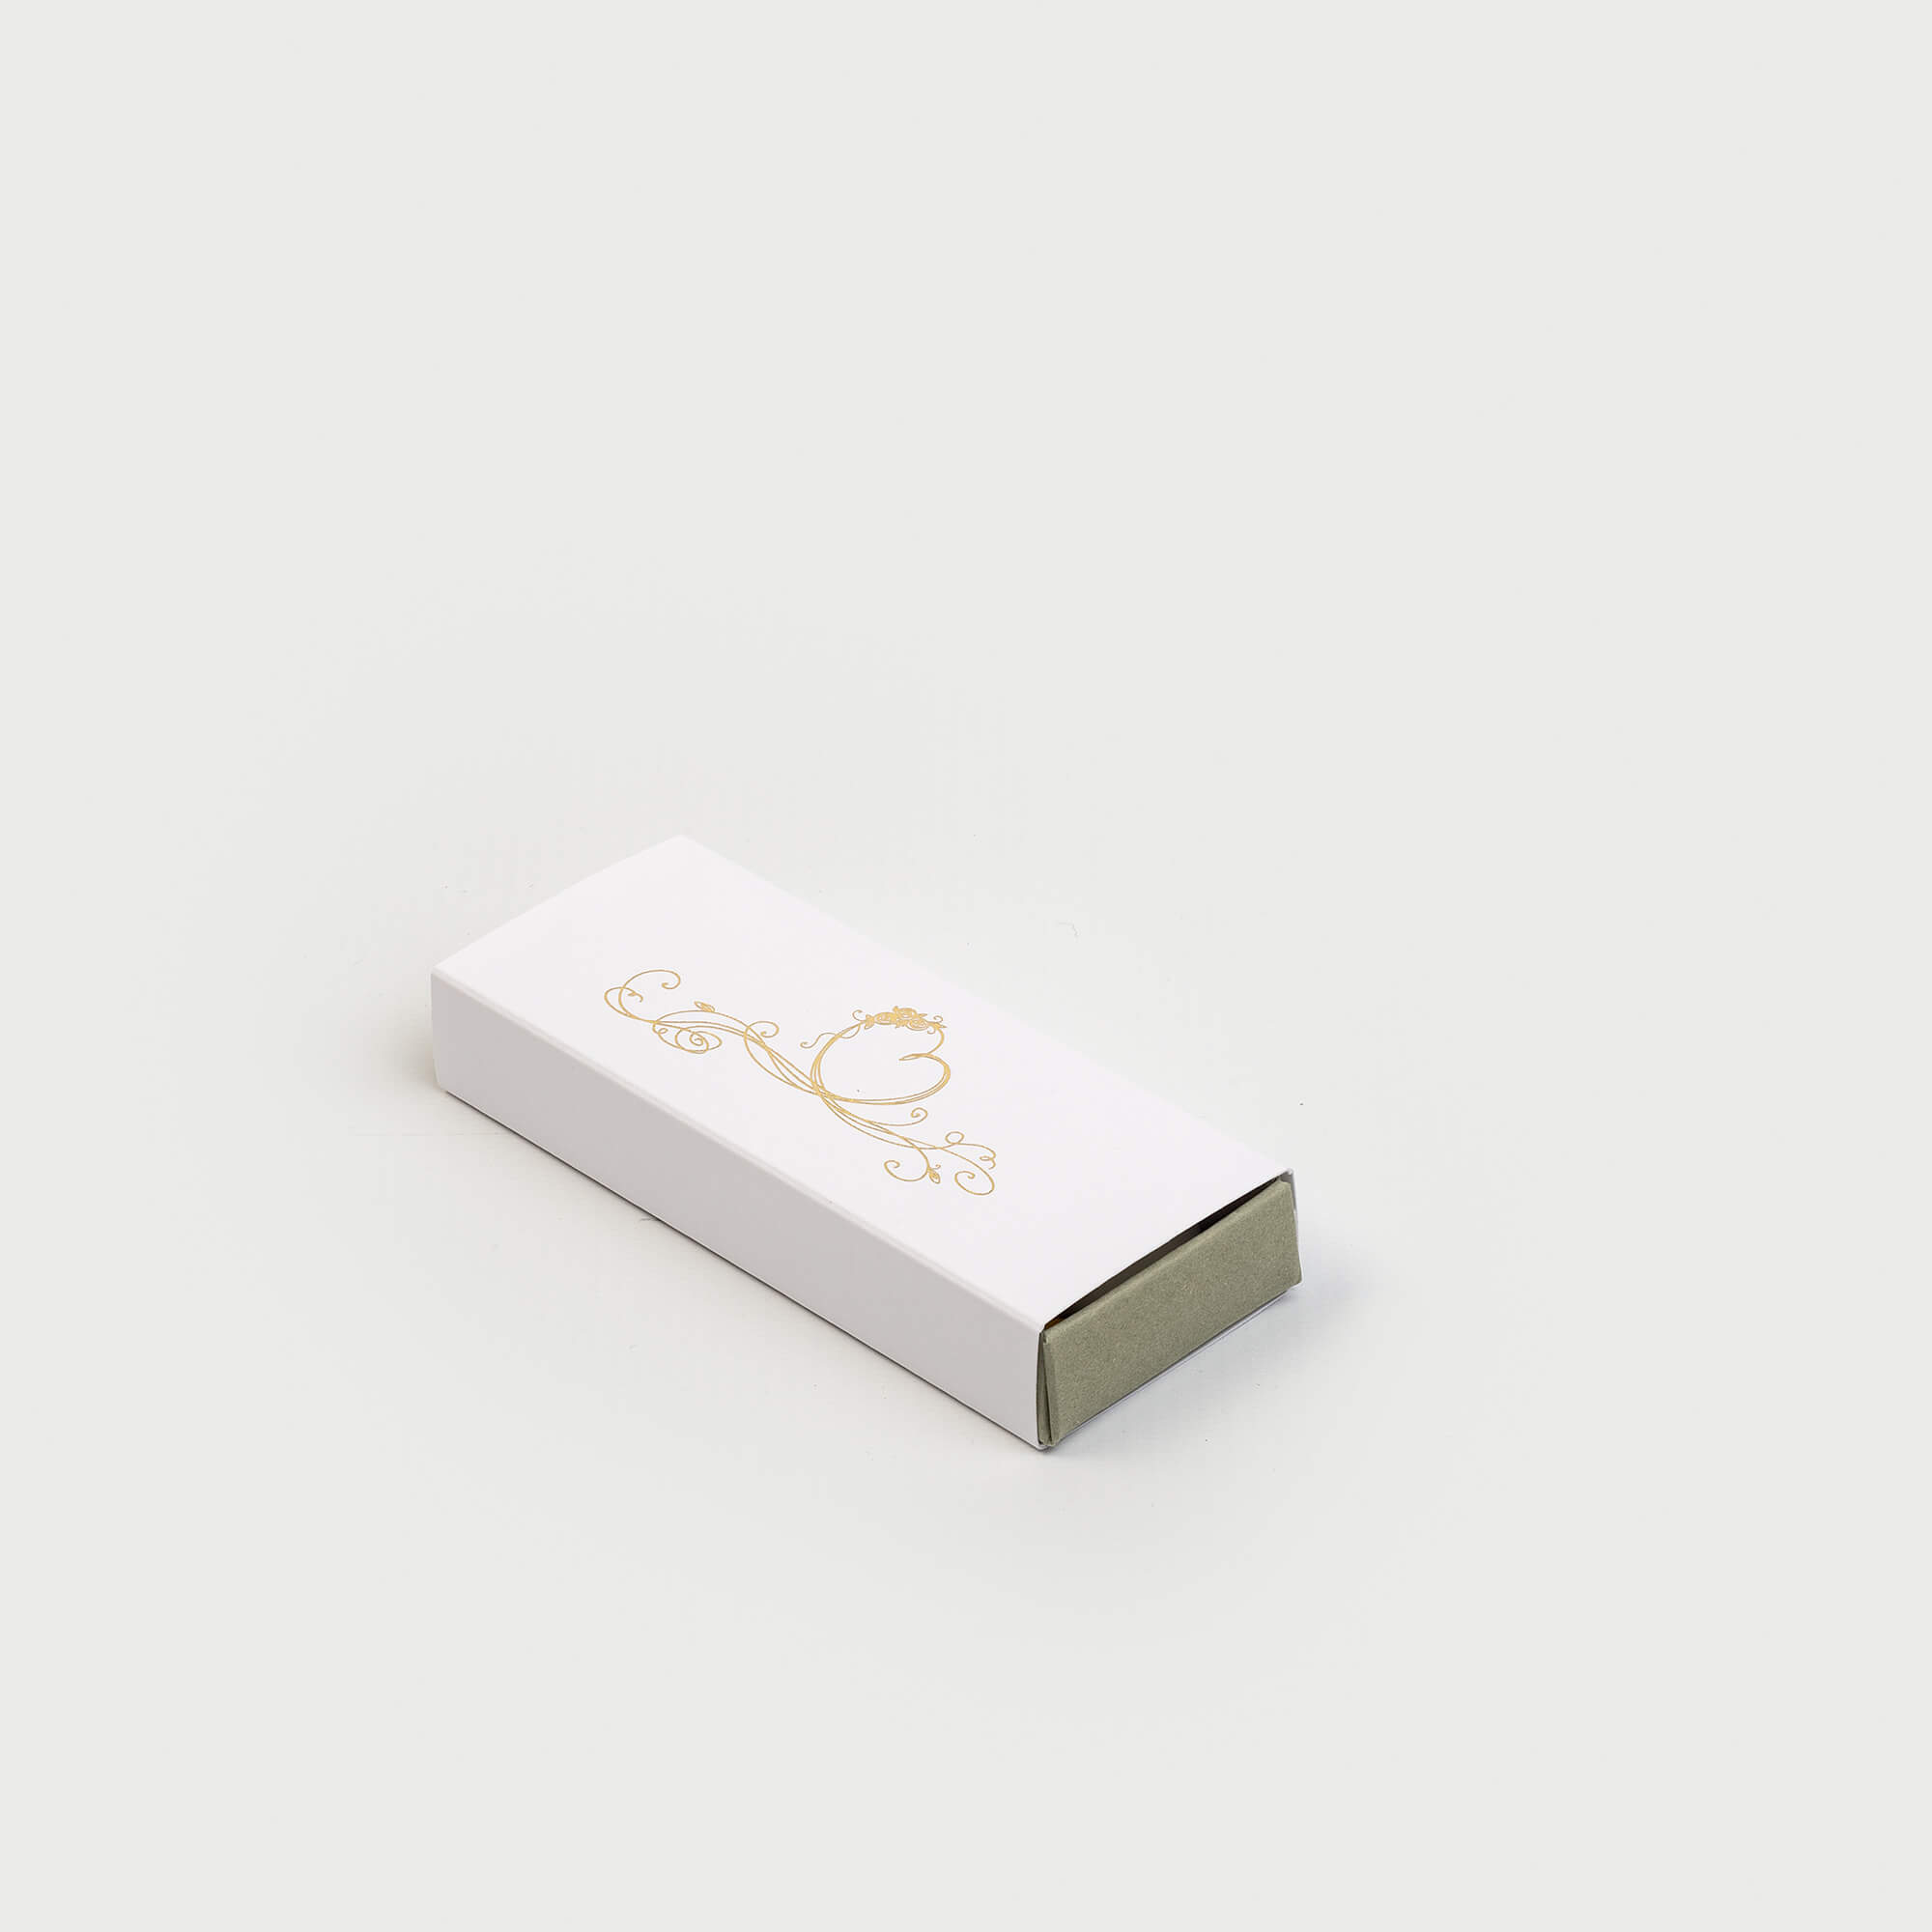 Boîte tiroir pour dragées, 45x110x20, intérieur couleur vert de gris, extérieur couleur blanc, impression dorée